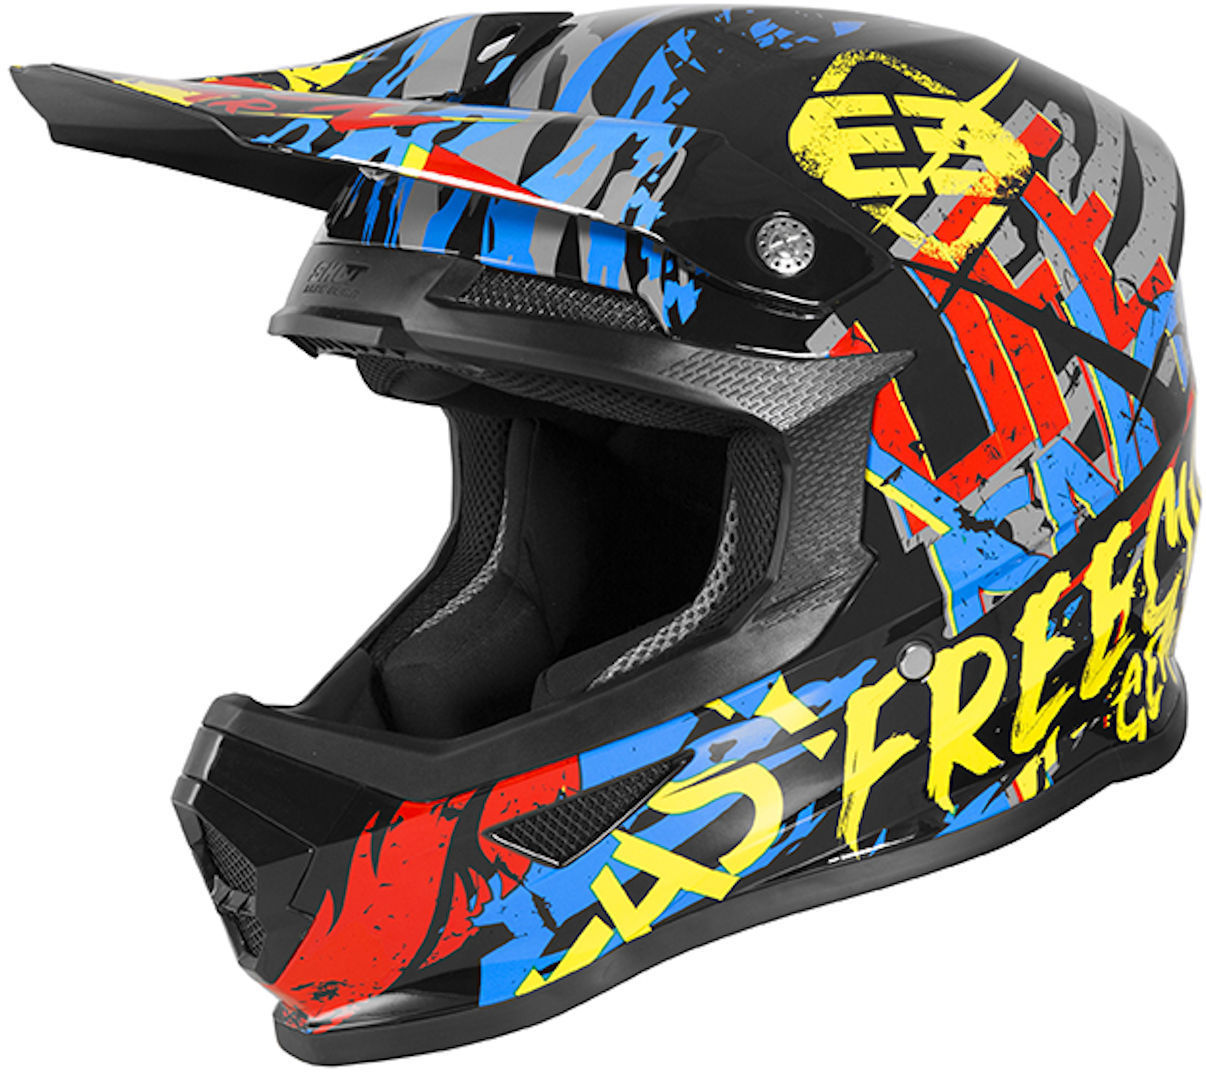 Шлем Freegun XP4 Maniac для мотокросса, черный/желтый/красный шлем для мотокросса blade race div fxr черный желтый красный